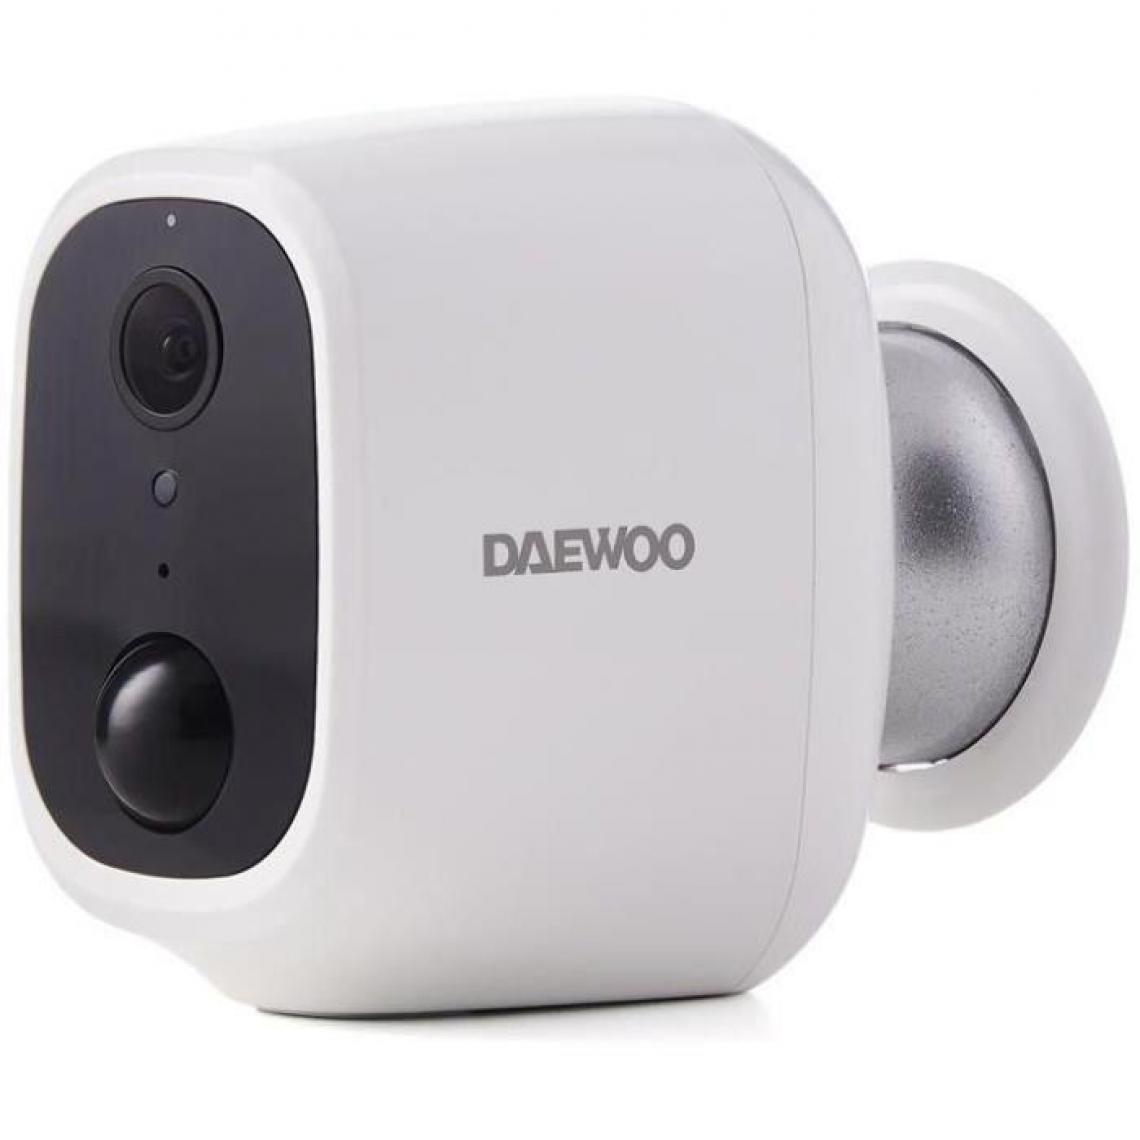 Daewoo - DAEWOO Caméra autonome W501 avec panneau solaire - Caméra de surveillance connectée